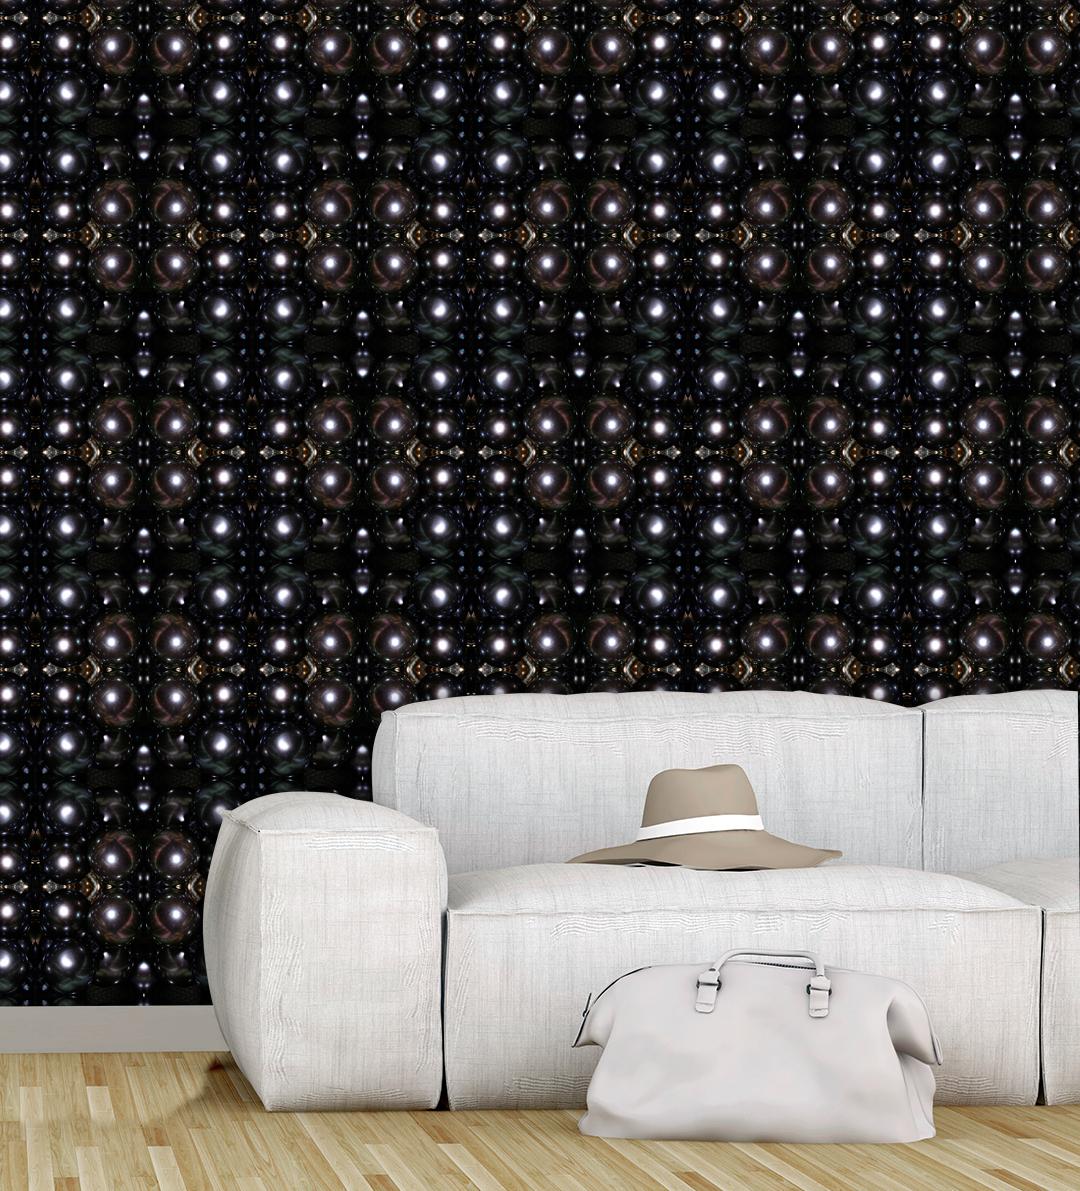 Overlapping Black Pearls aus unserer Collection No 1 wurde von der exquisiten Schönheit und dem glänzenden Aussehen der schwarzen Tahiti-Perlen inspiriert. Die schillernde Qualität der schwarzen Tahiti-Perlen, auch bekannt als 